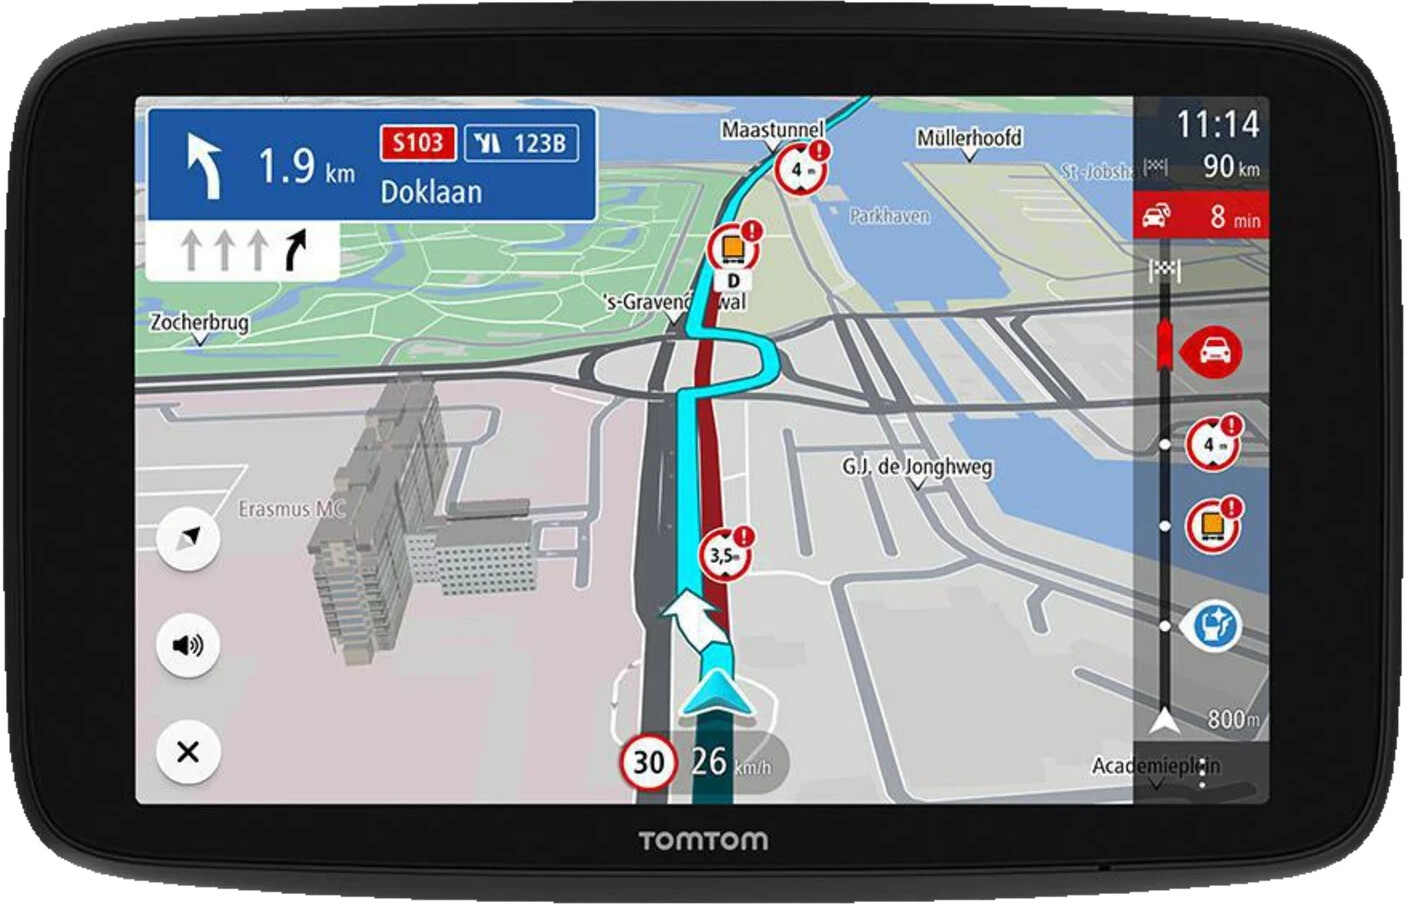 GPS Voiture, 7 Pouces Navigation pour Auto, Camion, Poids Lourd